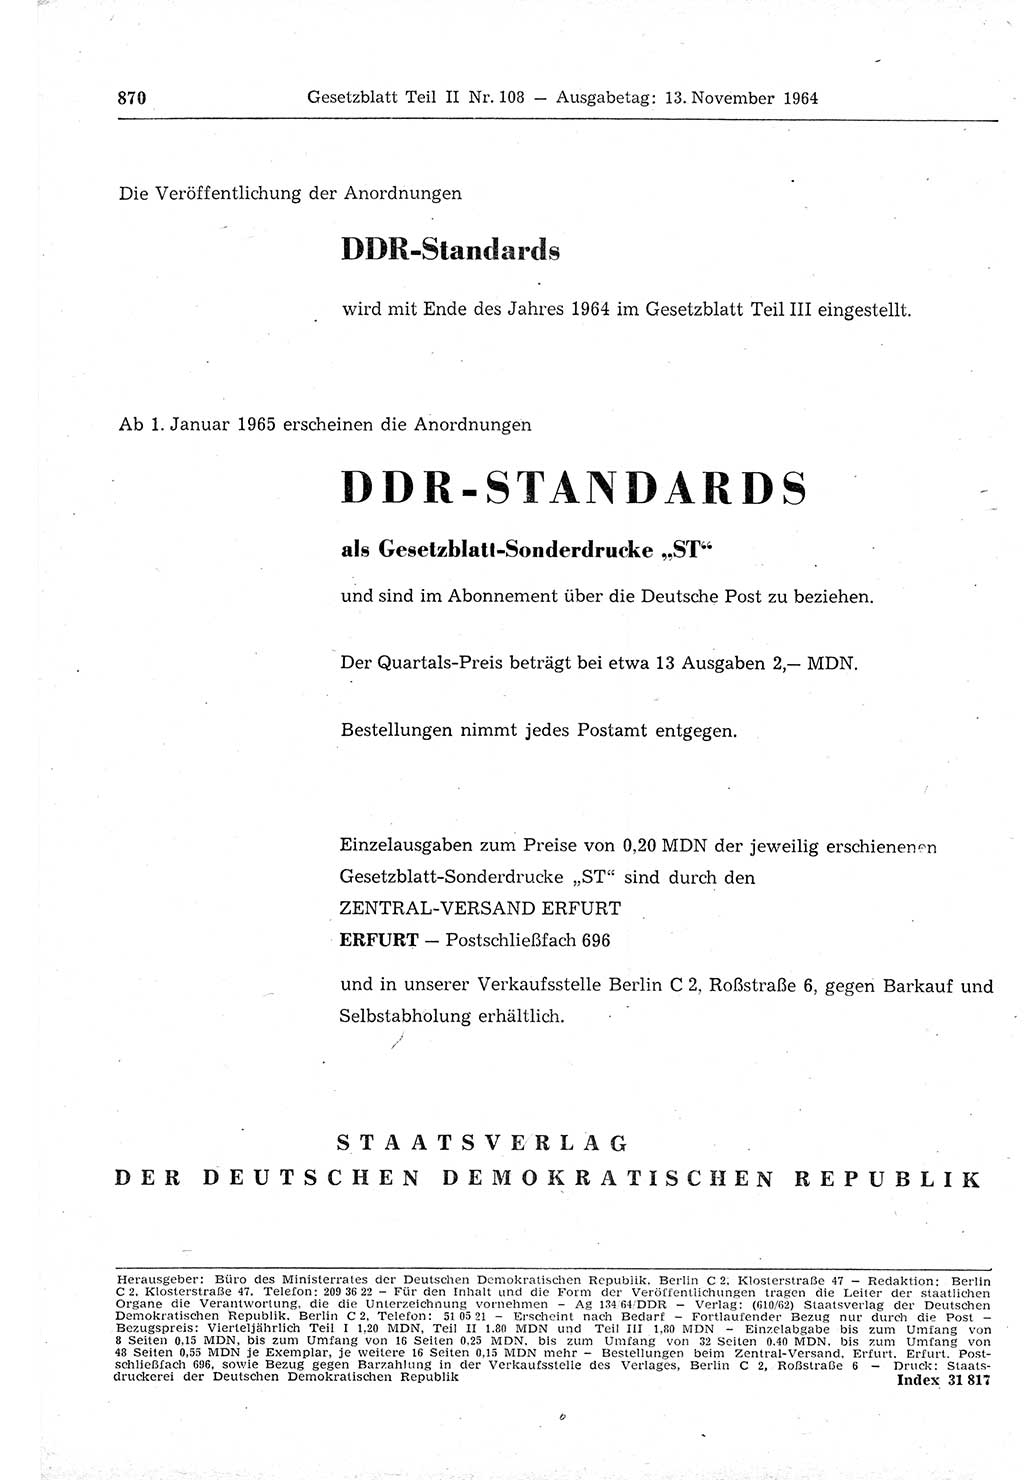 Gesetzblatt (GBl.) der Deutschen Demokratischen Republik (DDR) Teil ⅠⅠ 1964, Seite 870 (GBl. DDR ⅠⅠ 1964, S. 870)